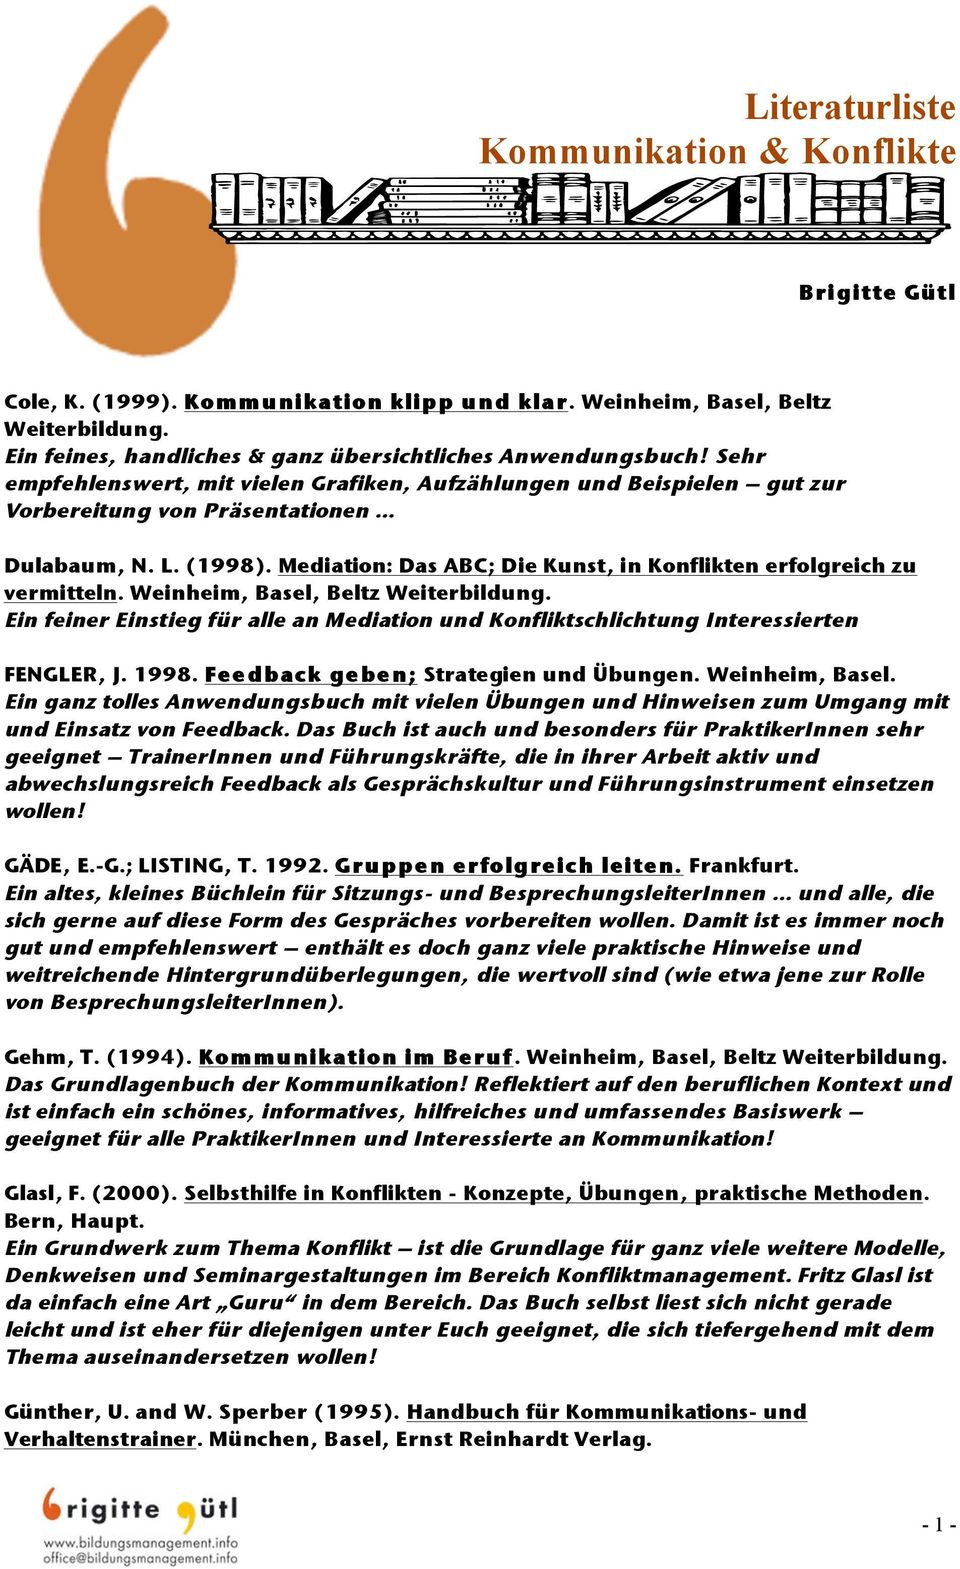 Mediation: Das ABC; Die Kunst, in Konflikten erfolgreich zu vermitteln. Weinheim, Basel, Beltz Weiterbildung.